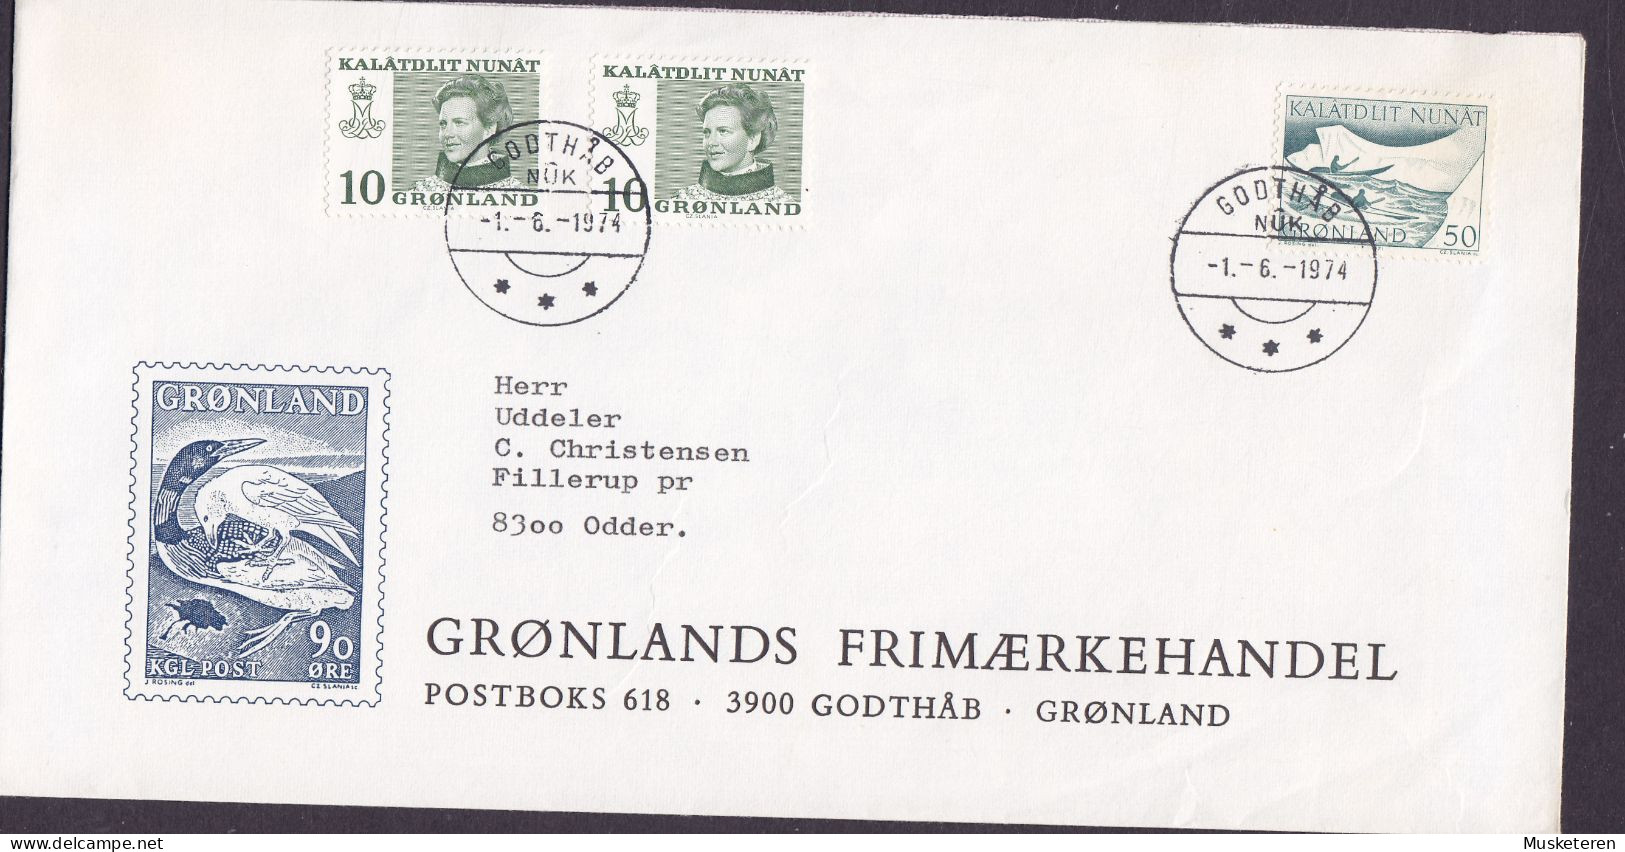 Greenland GRØNLANDS FRIMÆRKEHANDEL Cachet GODTHÅB 1974 Cover Brief ODDER Denmark Kajak Post (Cz. Slania) - Covers & Documents